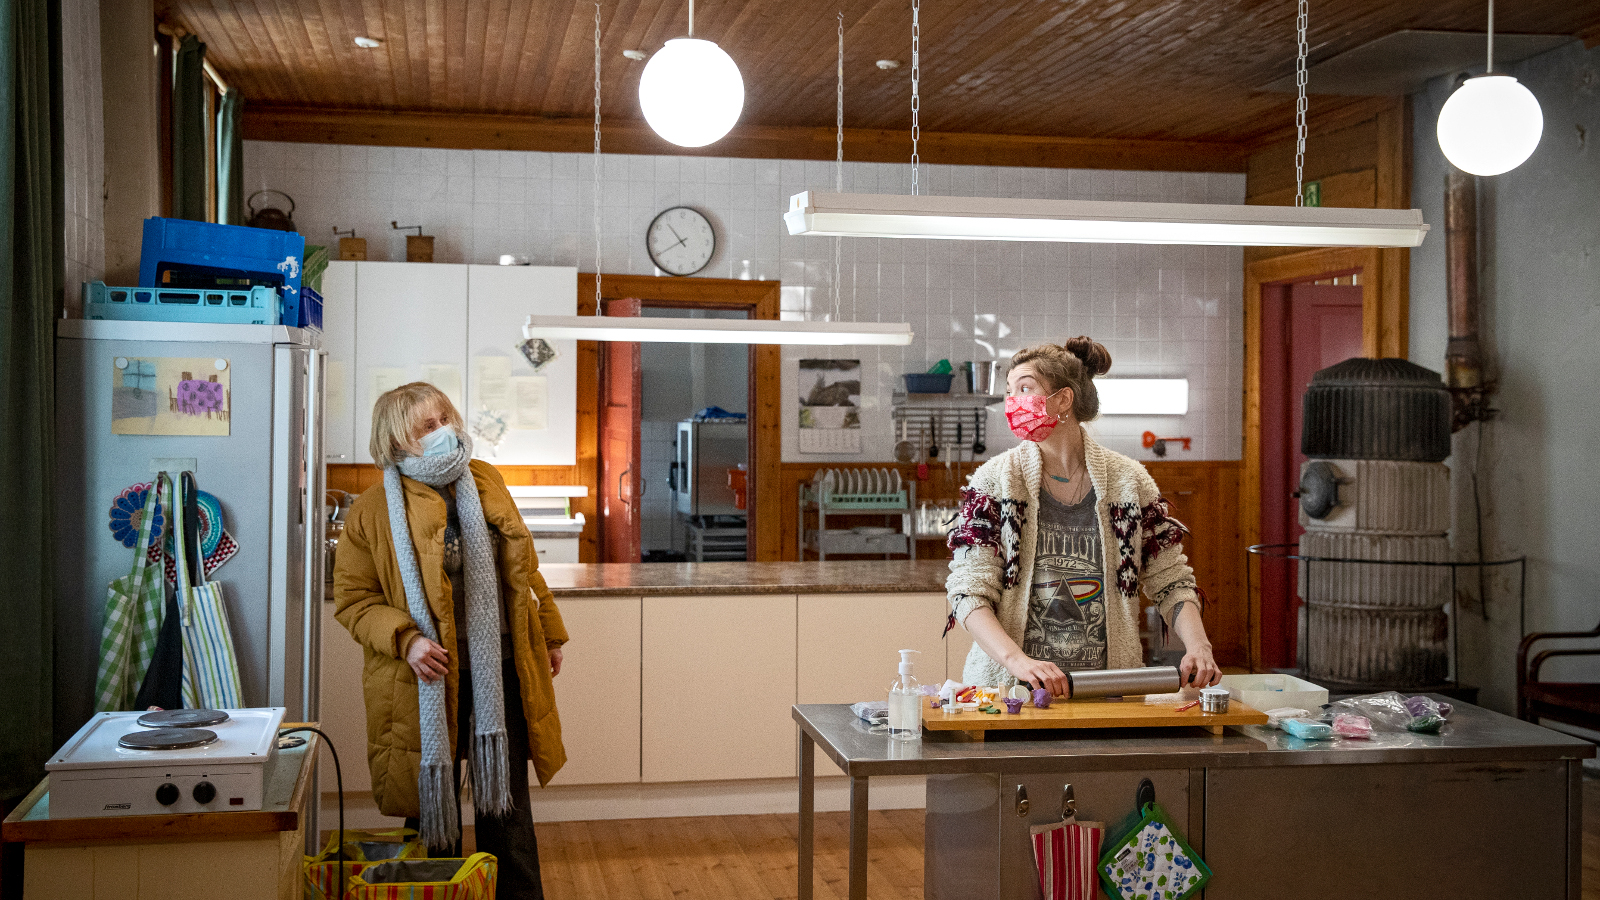 Kuvassa on vasemmalla päällysvaatteissa ja maskissa Leea Klemola ja oikealla leipomassa Emma Kilpimaa.  Kuva on keittiöstä.